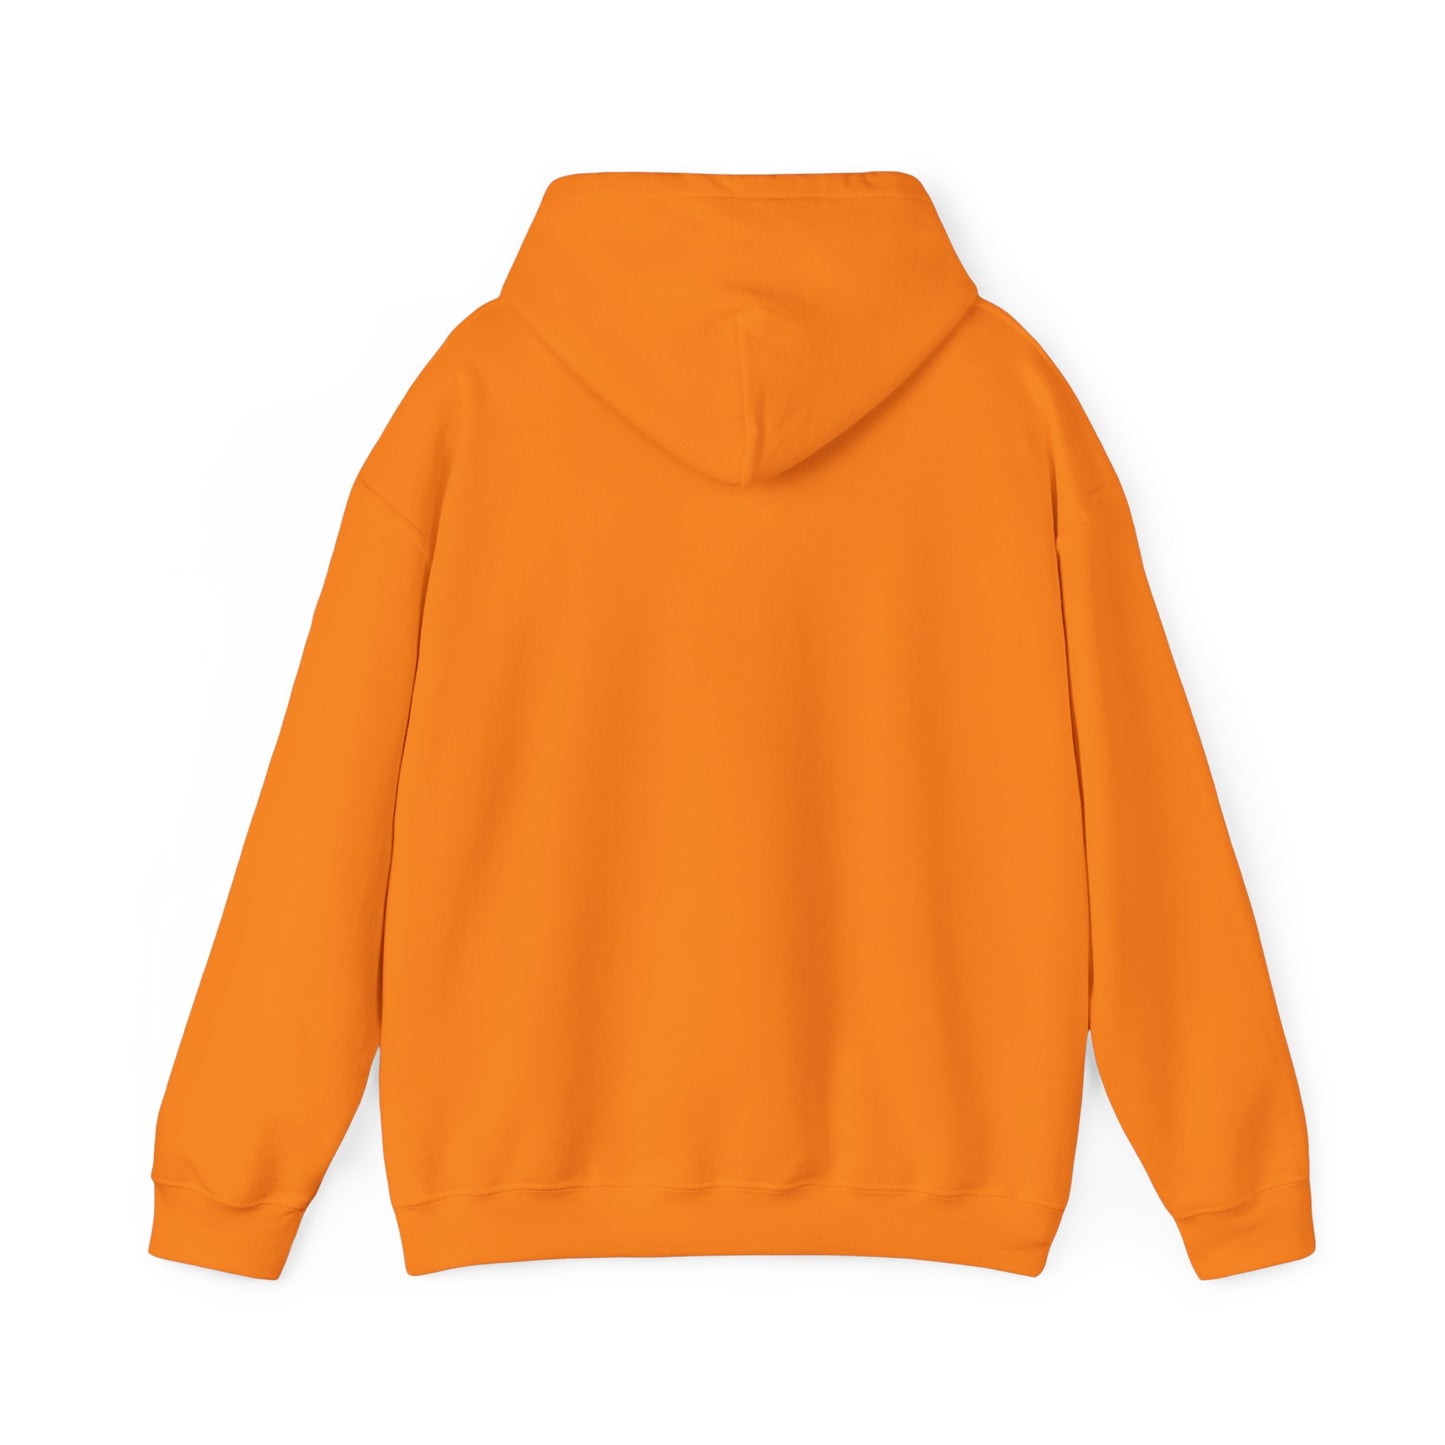 "It is what it is male" Single Print Unisex Heavy Blend™ Hooded Sweatshirt